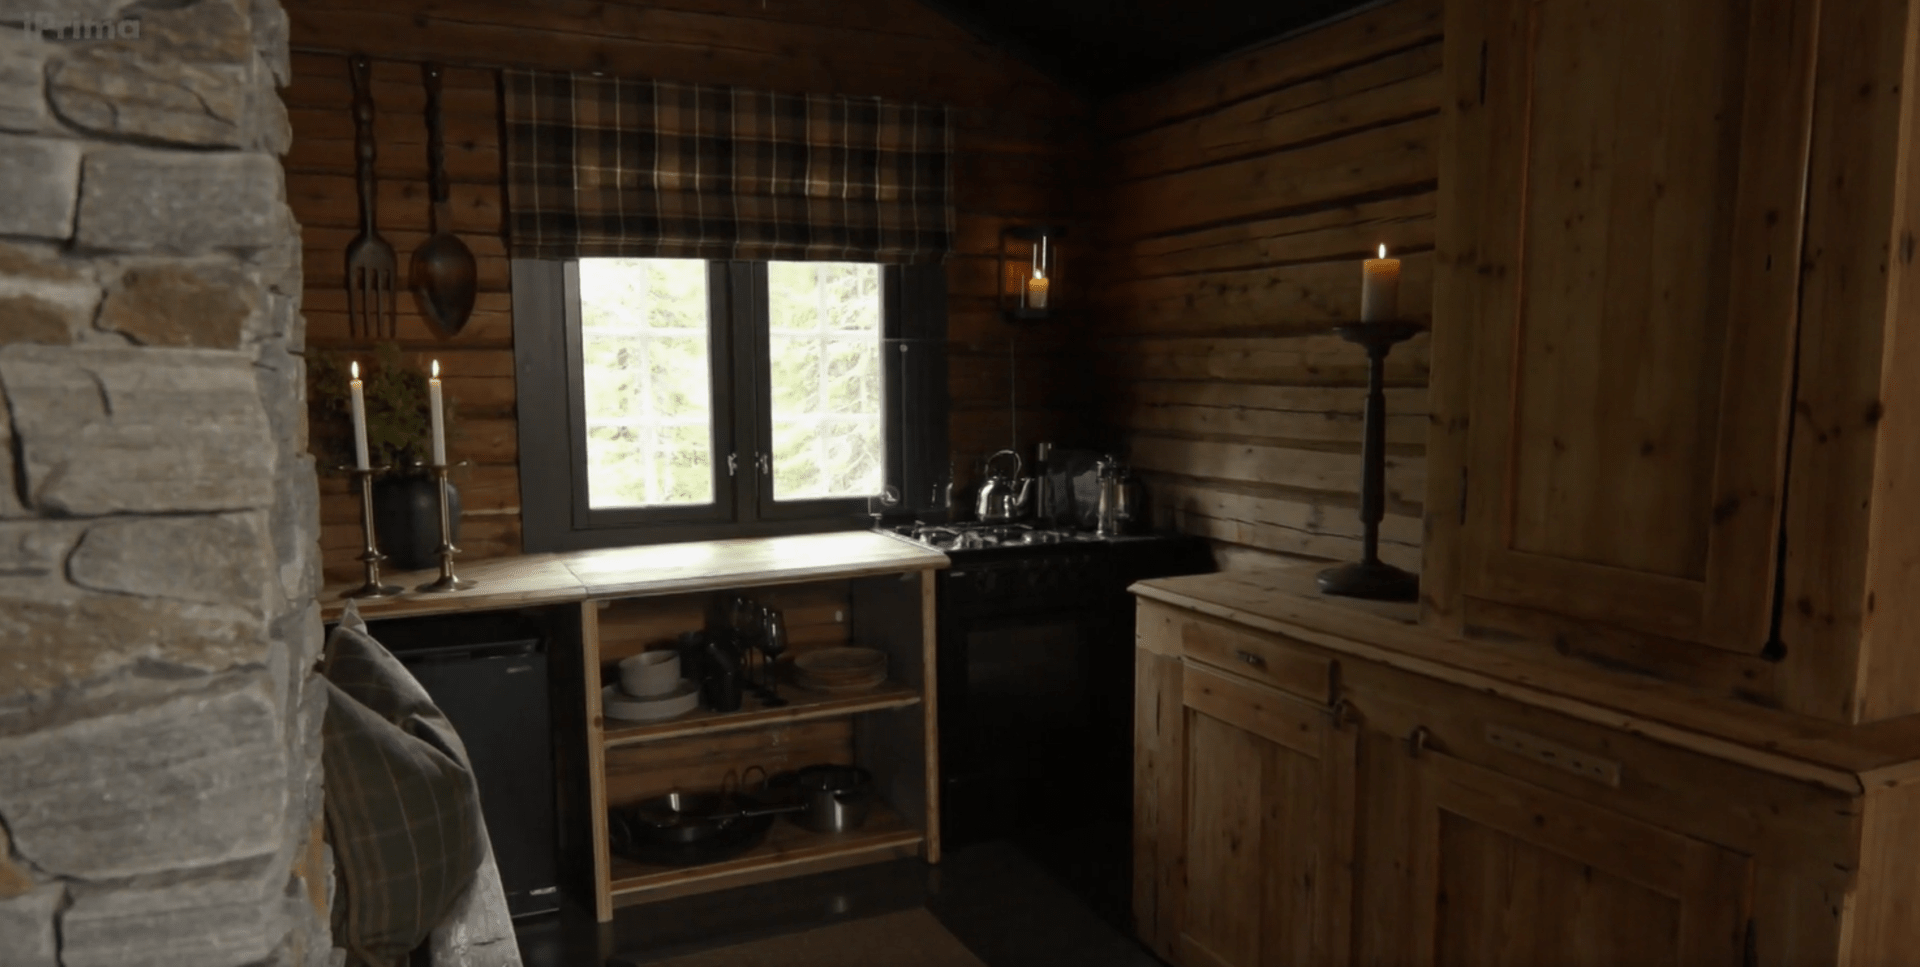 Kuchyň i po proměně zůstala v zásadě dřevěná, ale vypadá moderněji